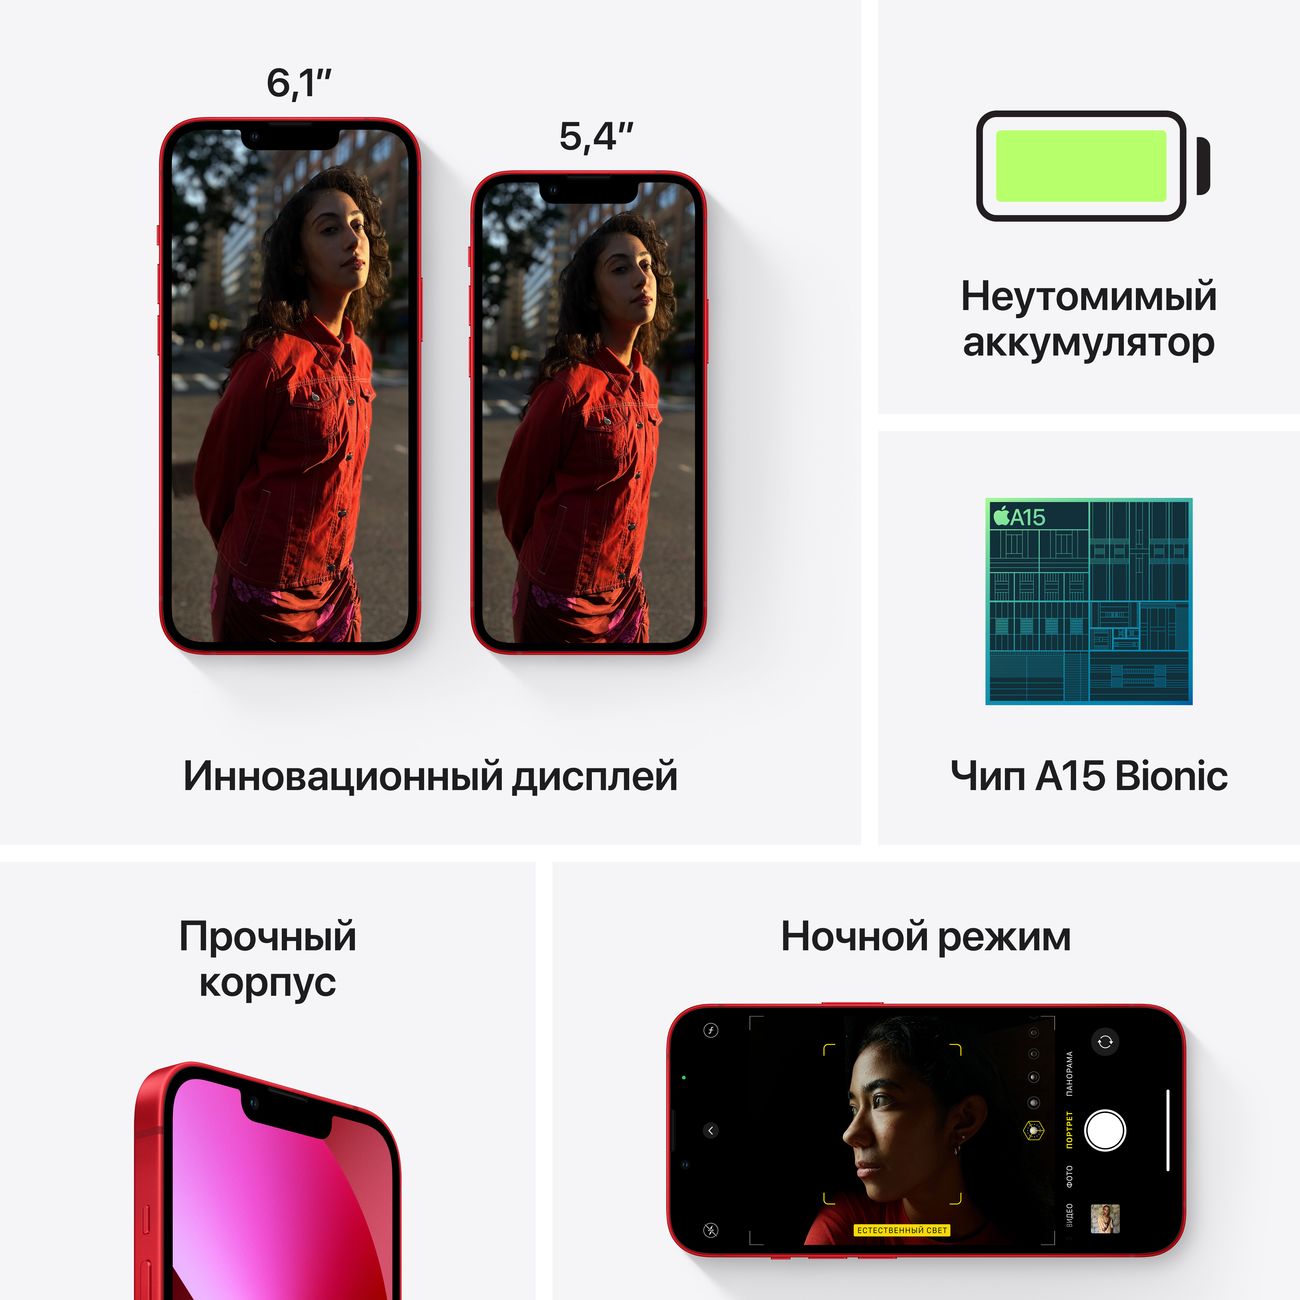 Купить смартфон apple iphone 13 mini 512gb midnight Apple iPhone 13 mini в официальном магазине Apple, Samsung, Xiaomi. iPixel.ru Купить, заказ, кредит, рассрочка, отзывы,  характеристики, цена,  фотографии, в подарок.